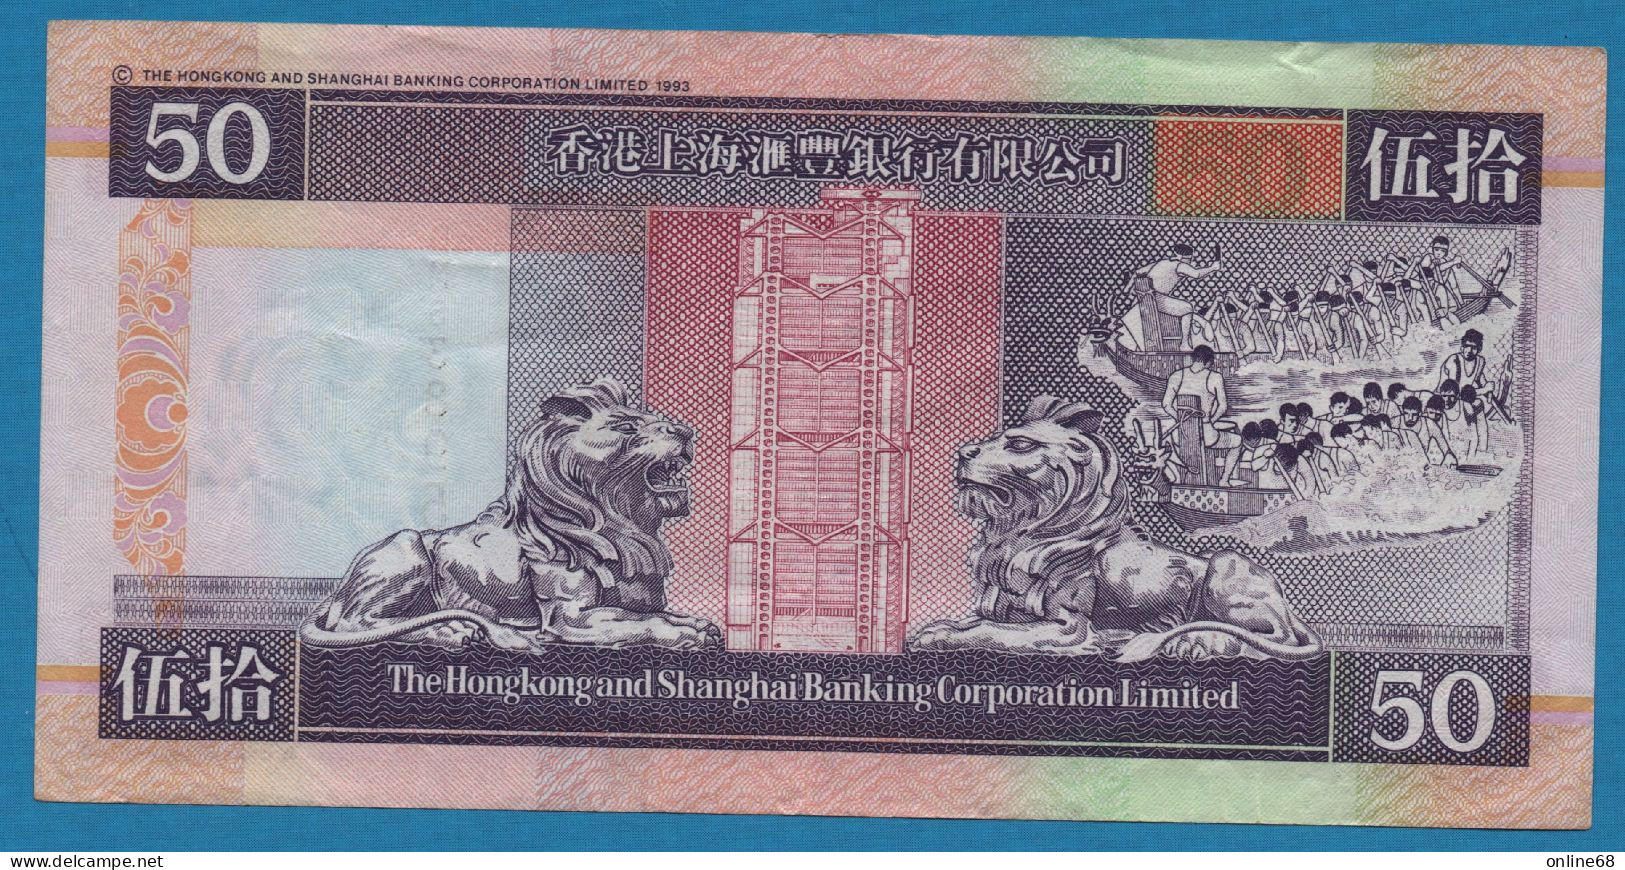 HONG KONG 50 DOLLARS 01.01.2002 # DM538959 P# 202e Hongkong & Shanghai Banking - Hong Kong